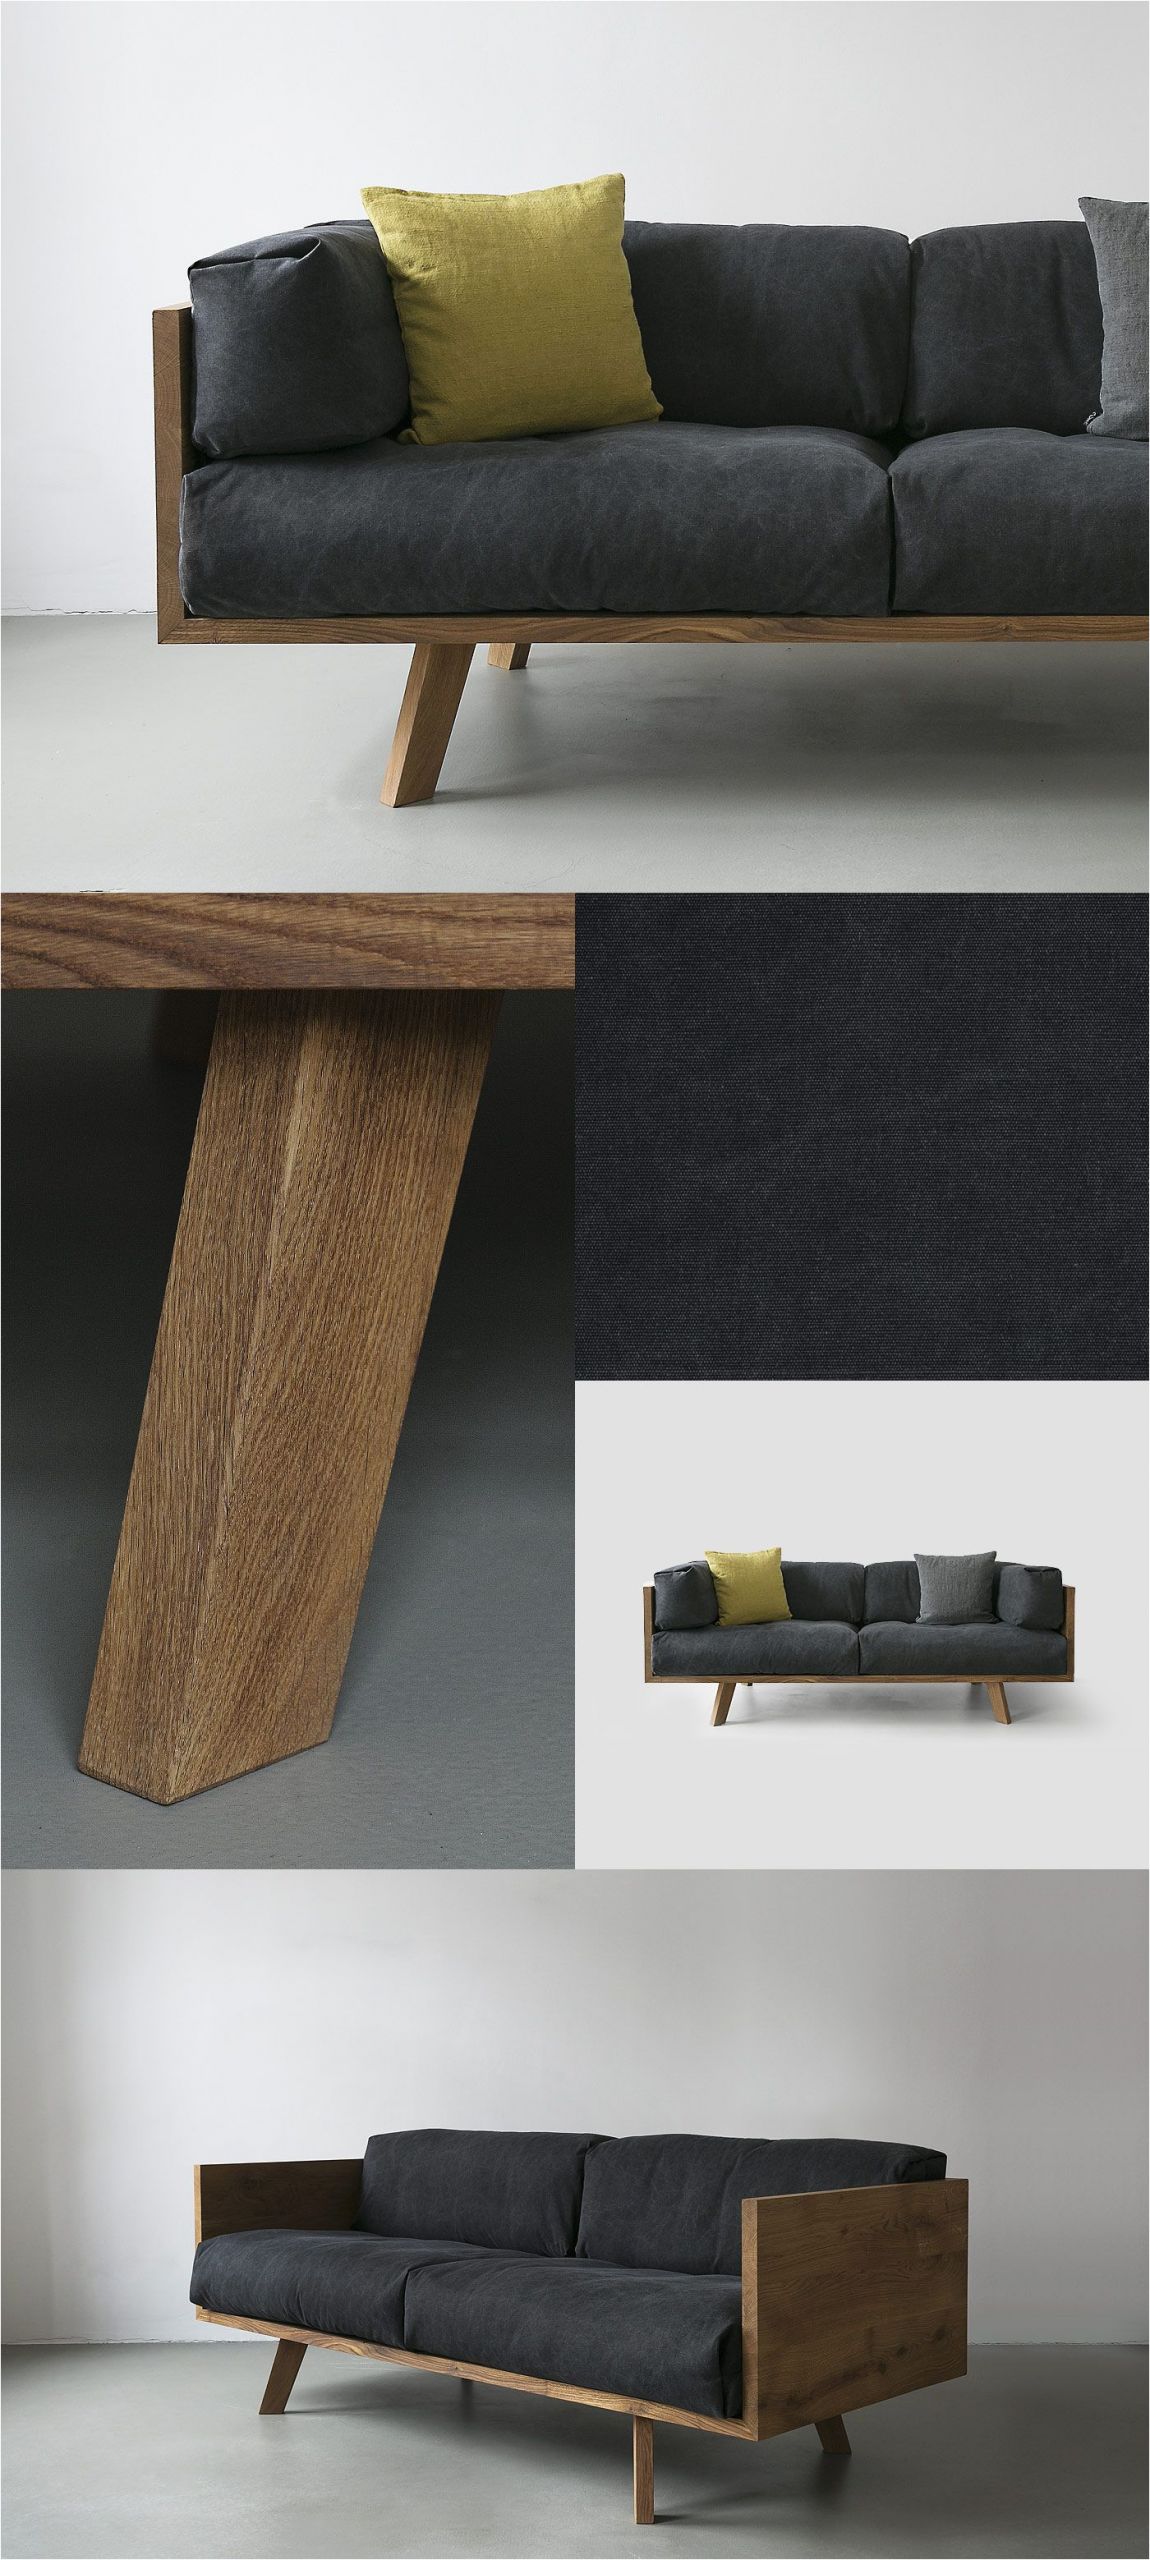 Hotel sofa Design Diy Furniture I Möbel Selber Bauen I Couch sofa Daybed I